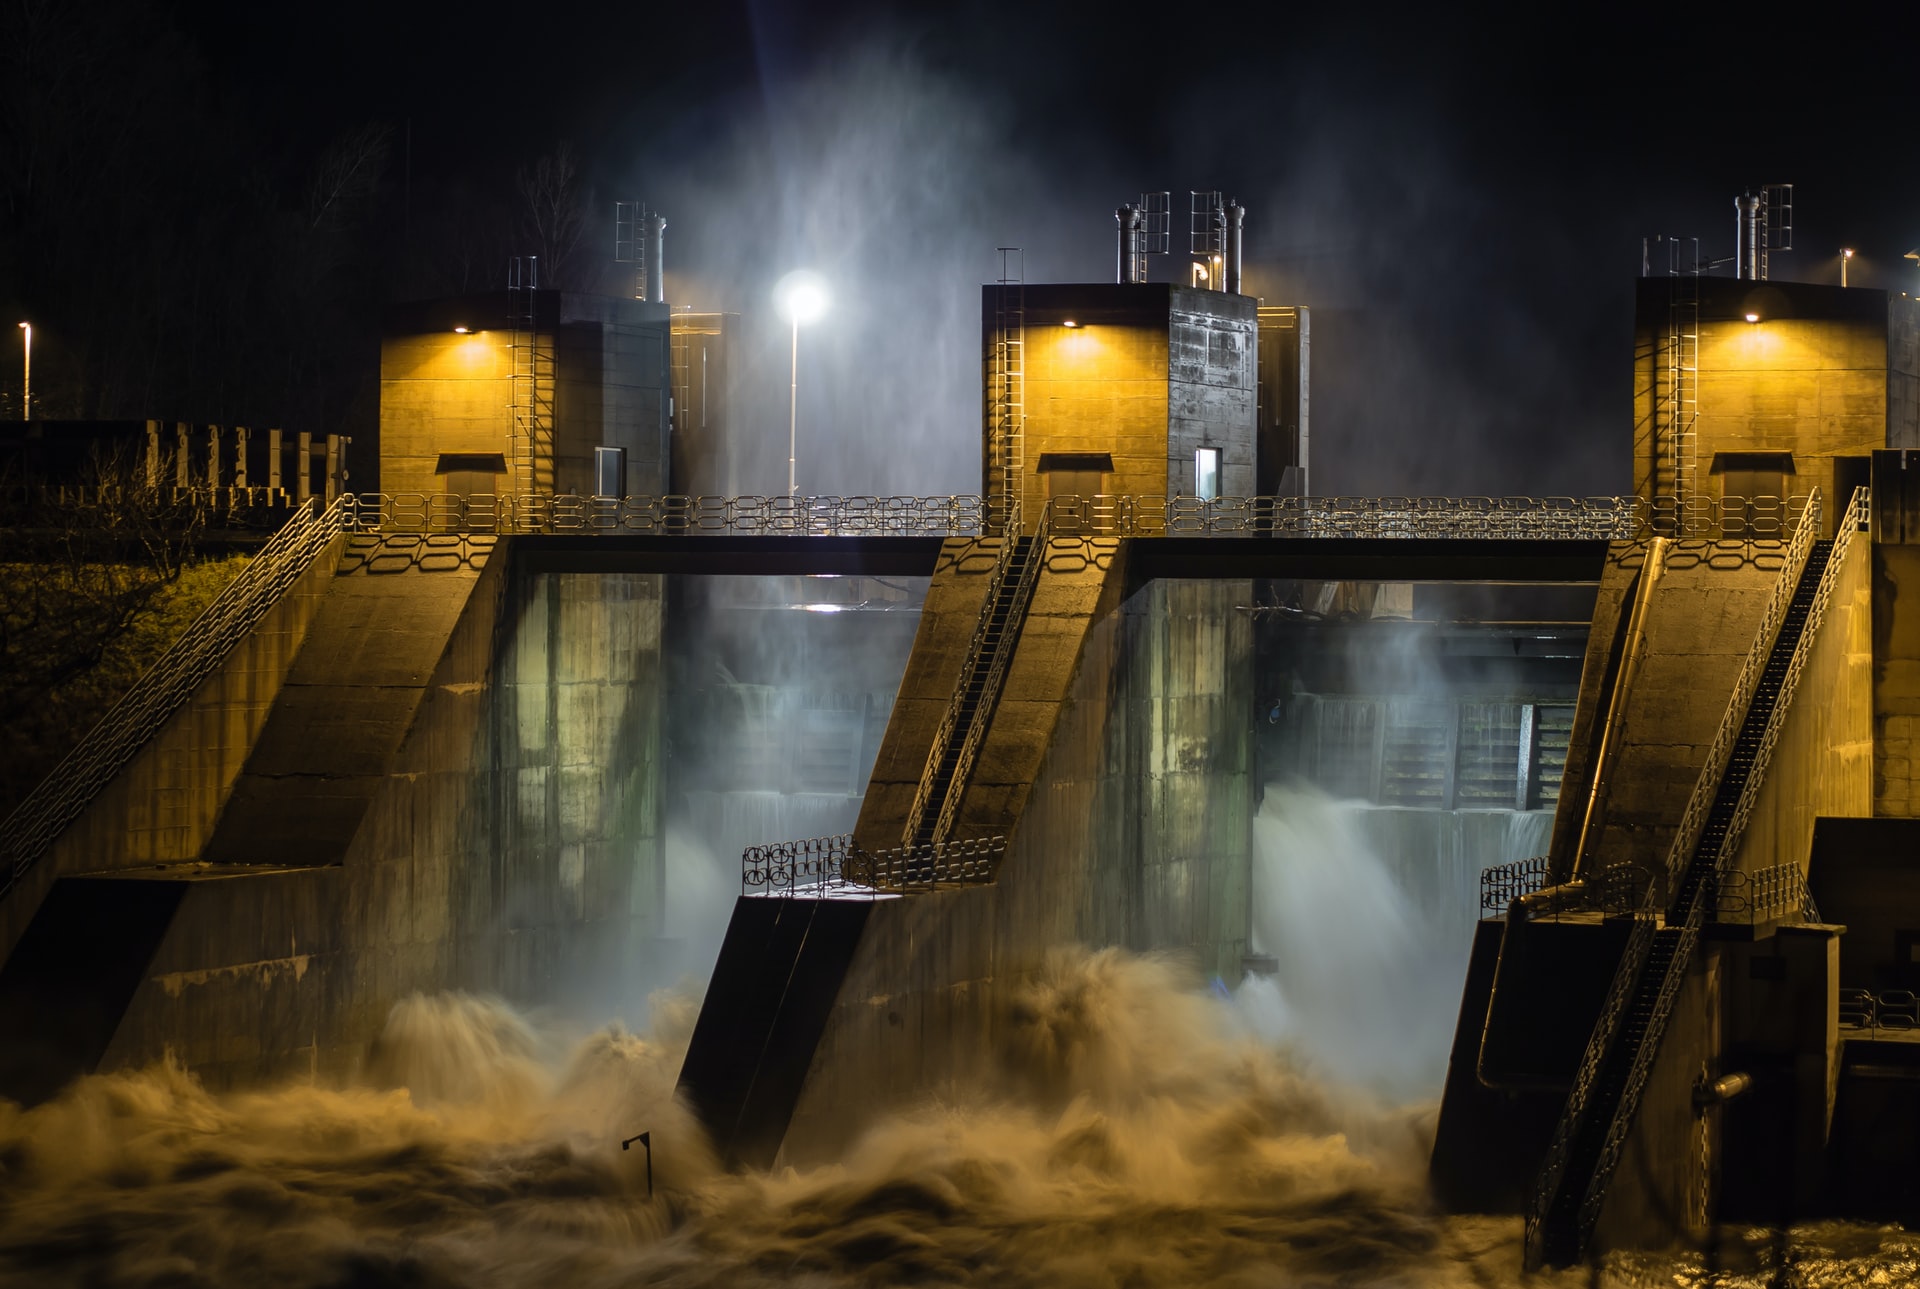 構造物によって異なる水力発電の種類